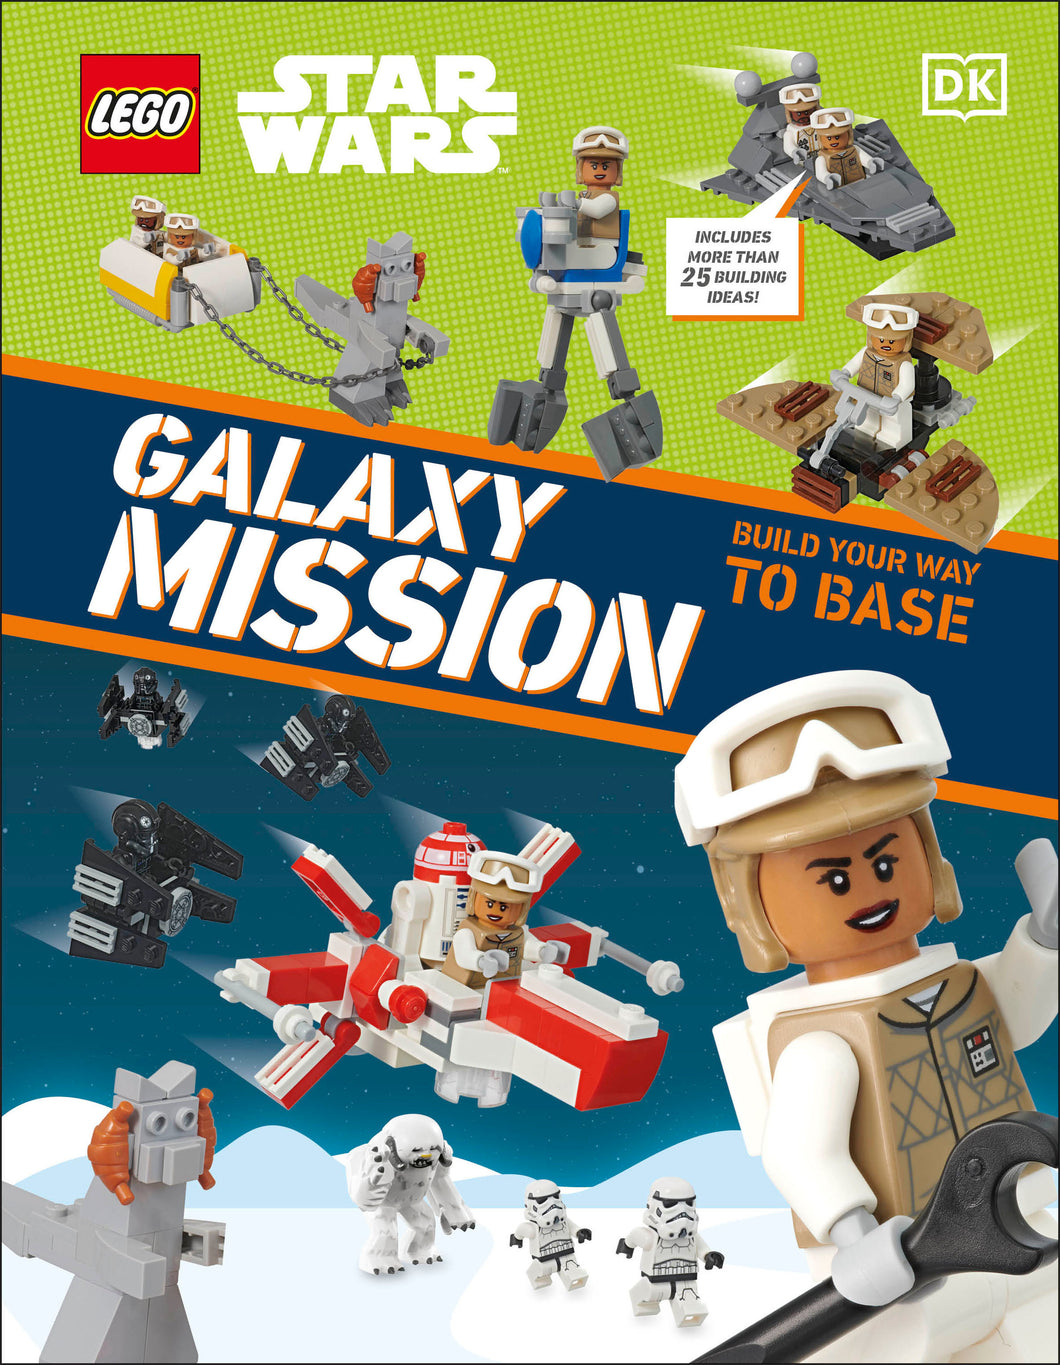 Lego Star Wars Galaxy Mission